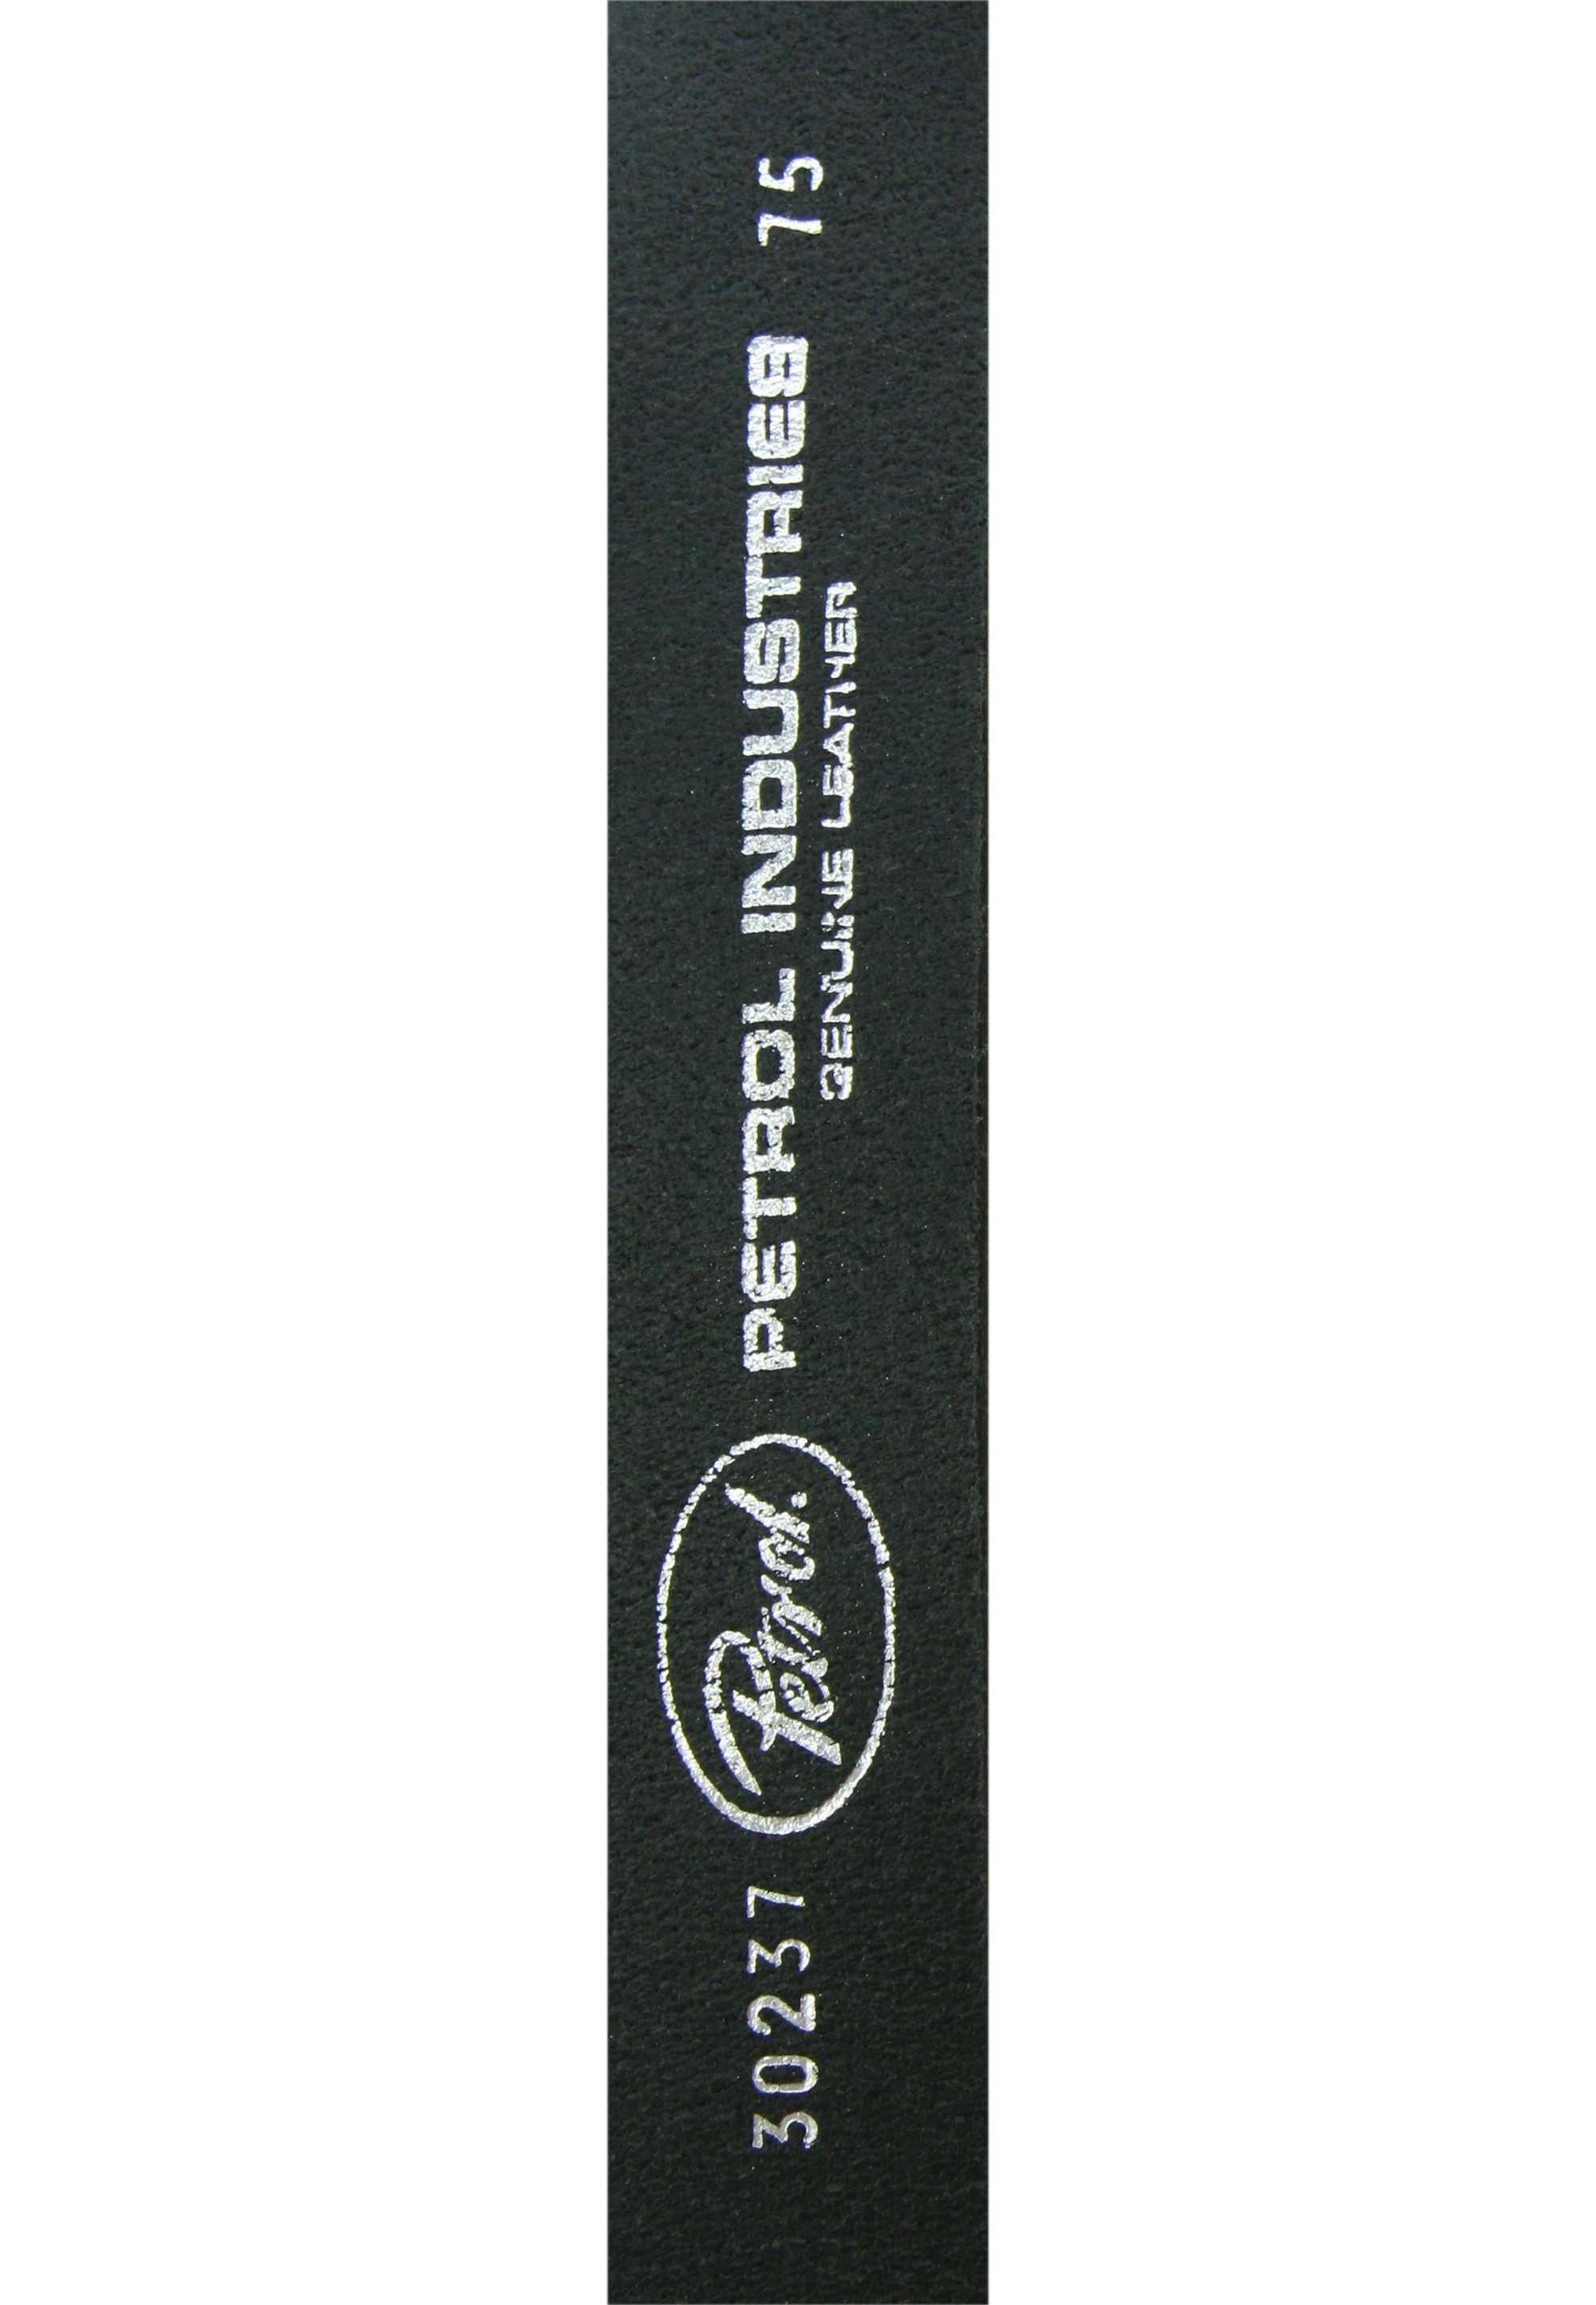 Ledergürtel mit Multischlaufen-Loop Petrol schwarz-silberfarben Industries stylishem